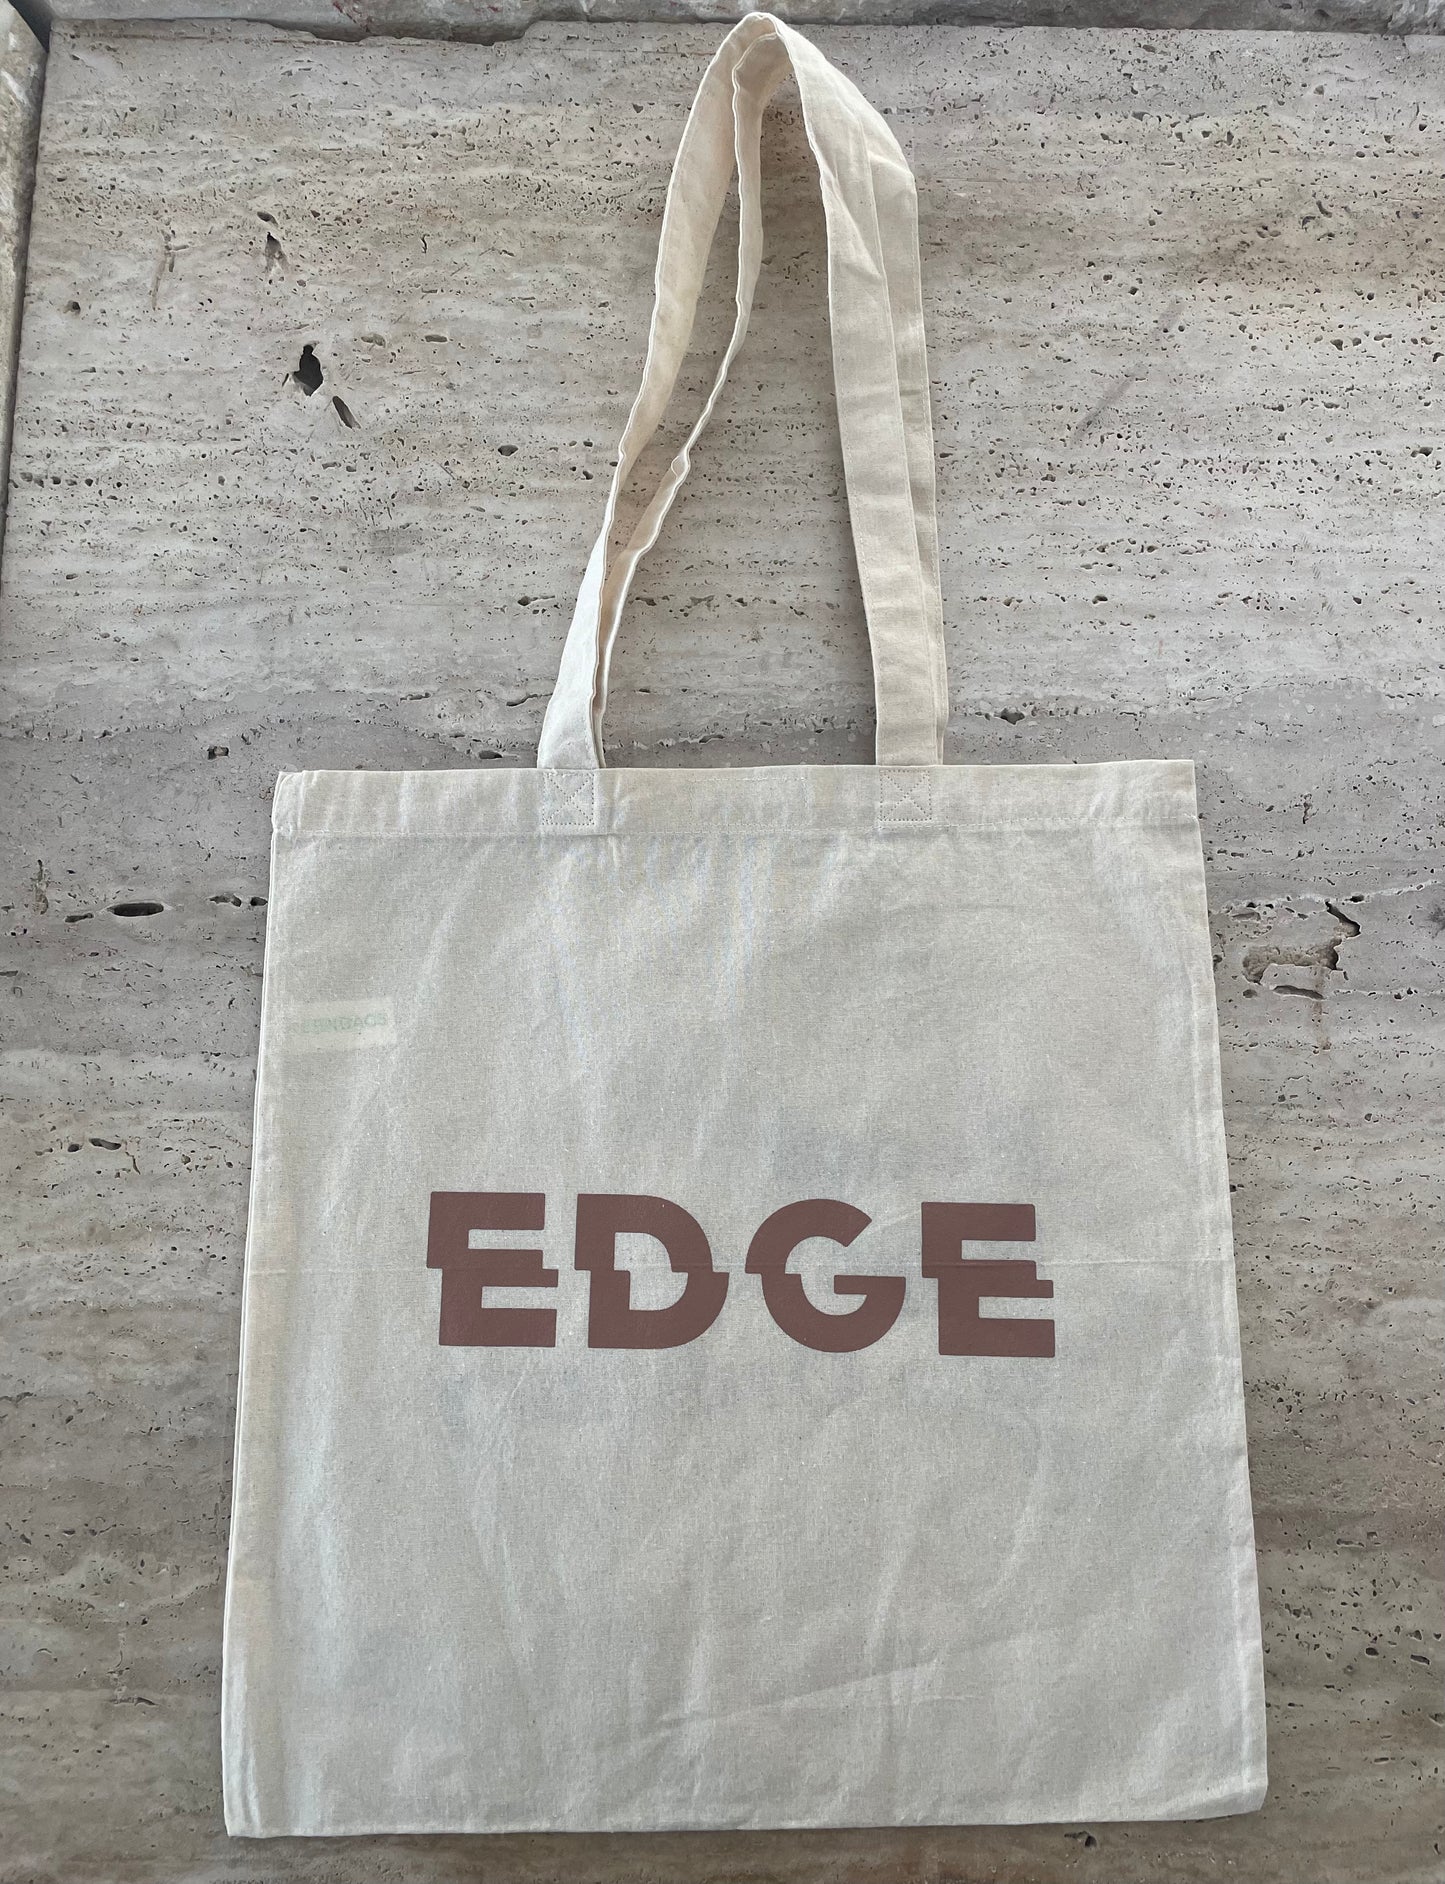 EDGE Reusable Tote Bags